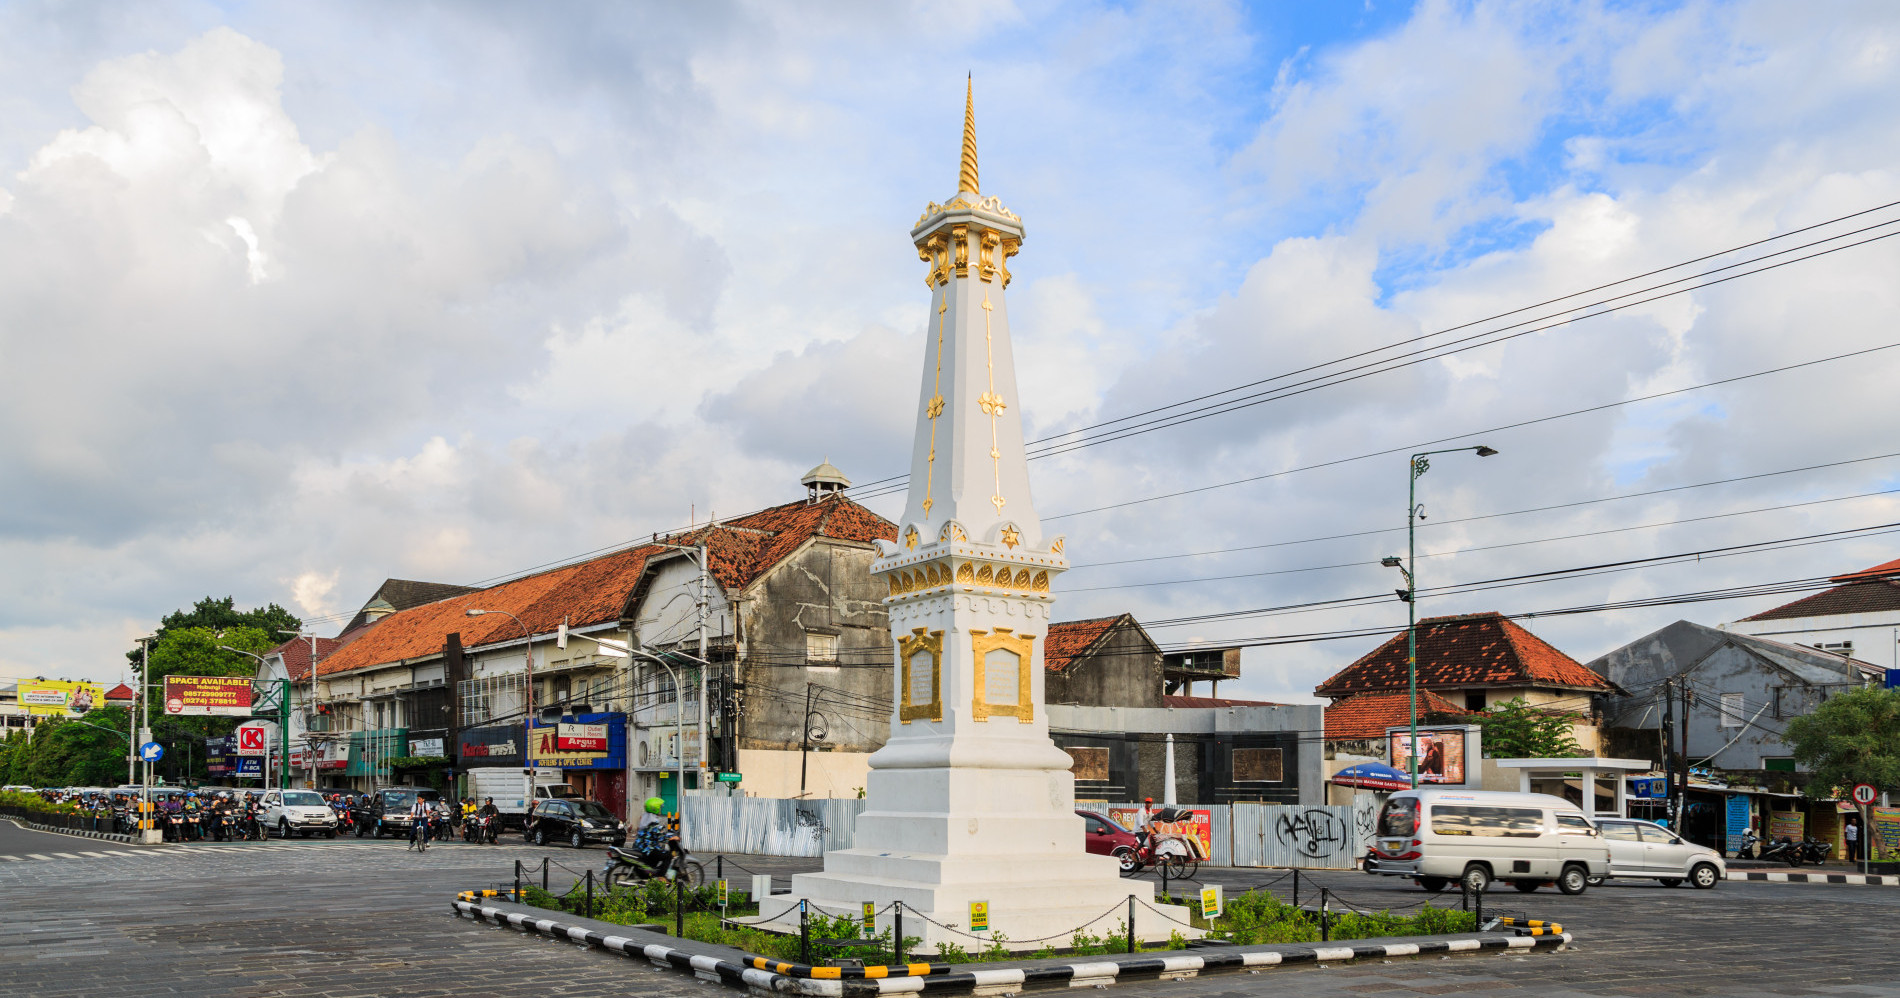 Sumber Gambar: https://upload.wikimedia.org/wikipedia/commons/1/10/Yogyakarta_Indonesia_Tugu-Yogyakarta-02.jpg